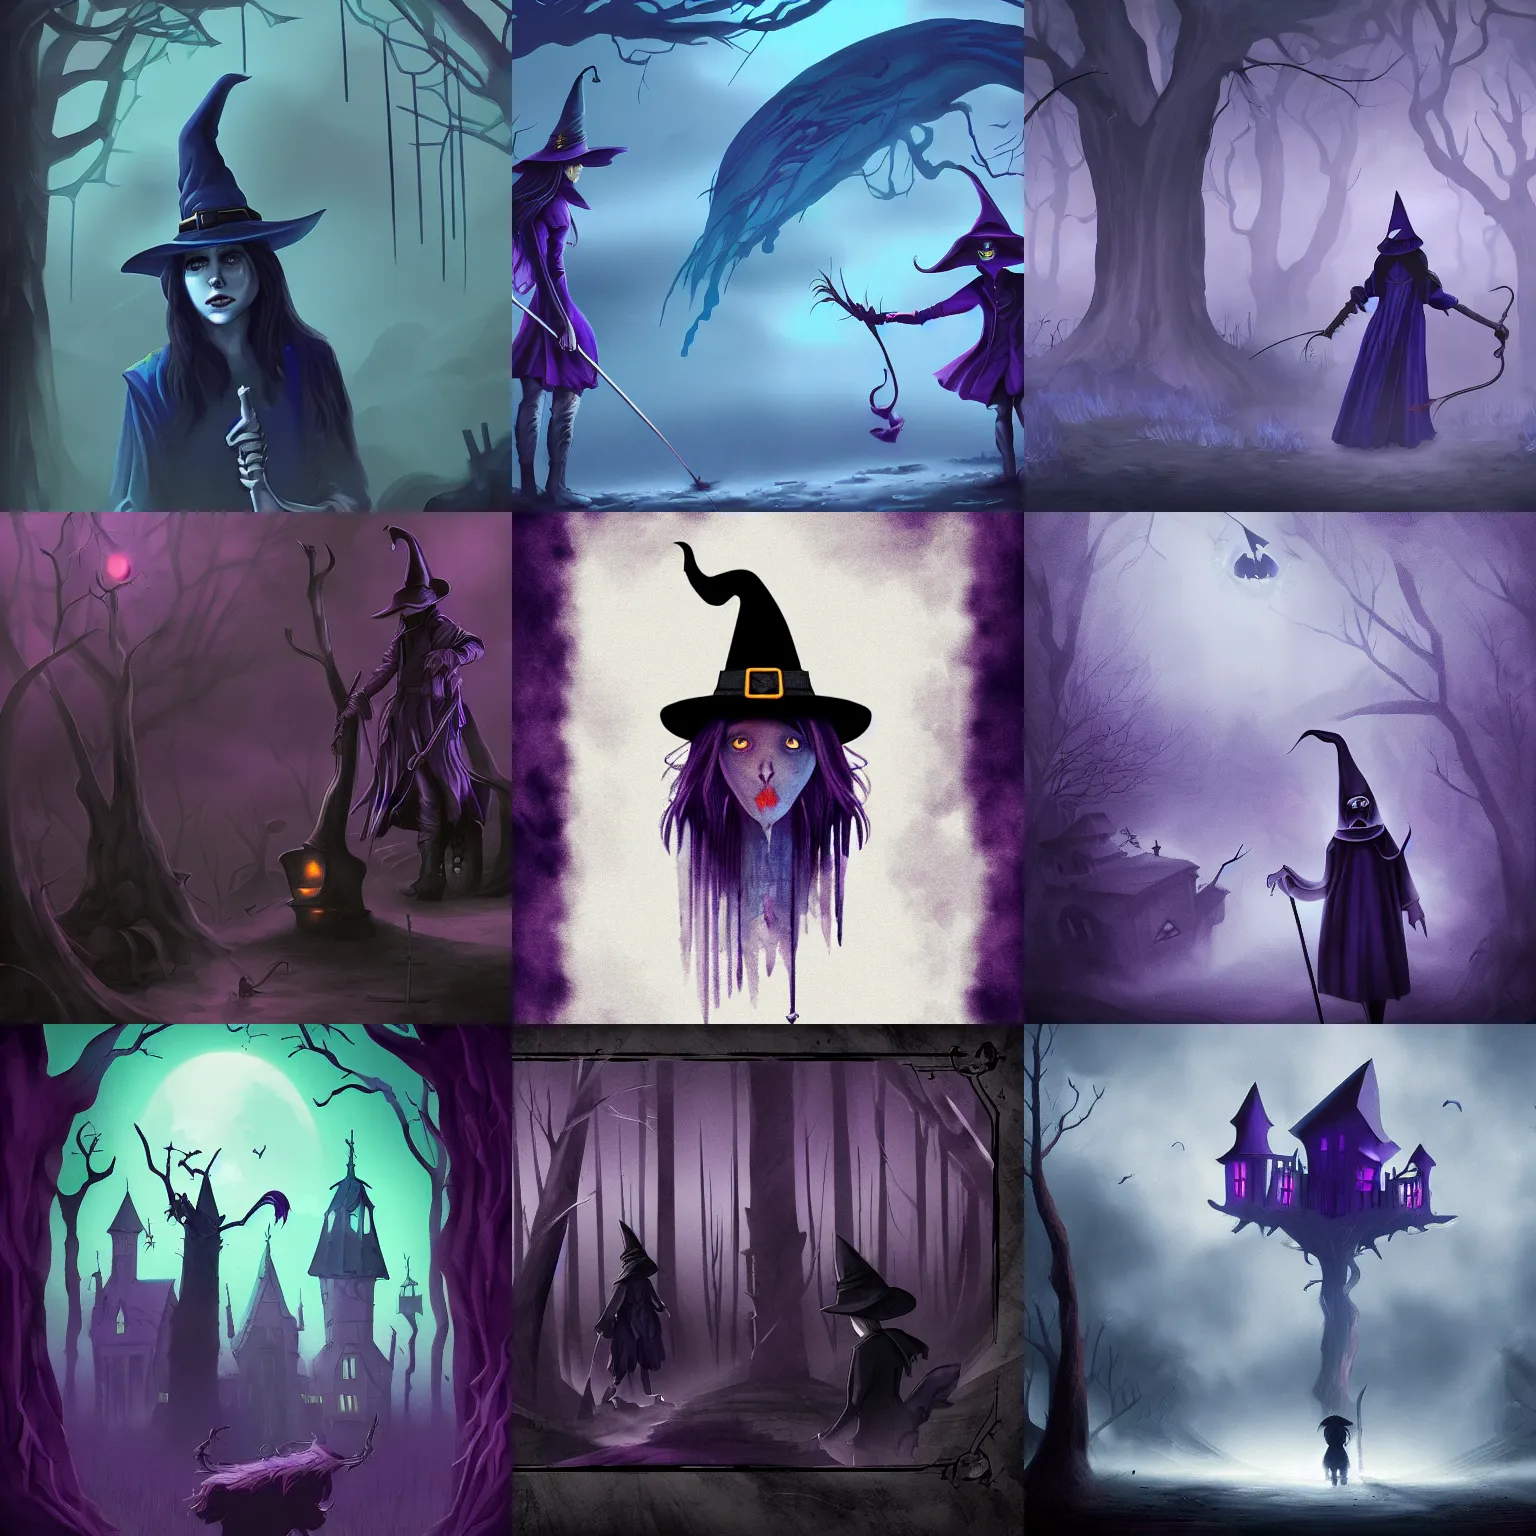 Prompt: witch hunt, digital artwork, dark purple blue colors, sinister atmosphere, trending on artstation